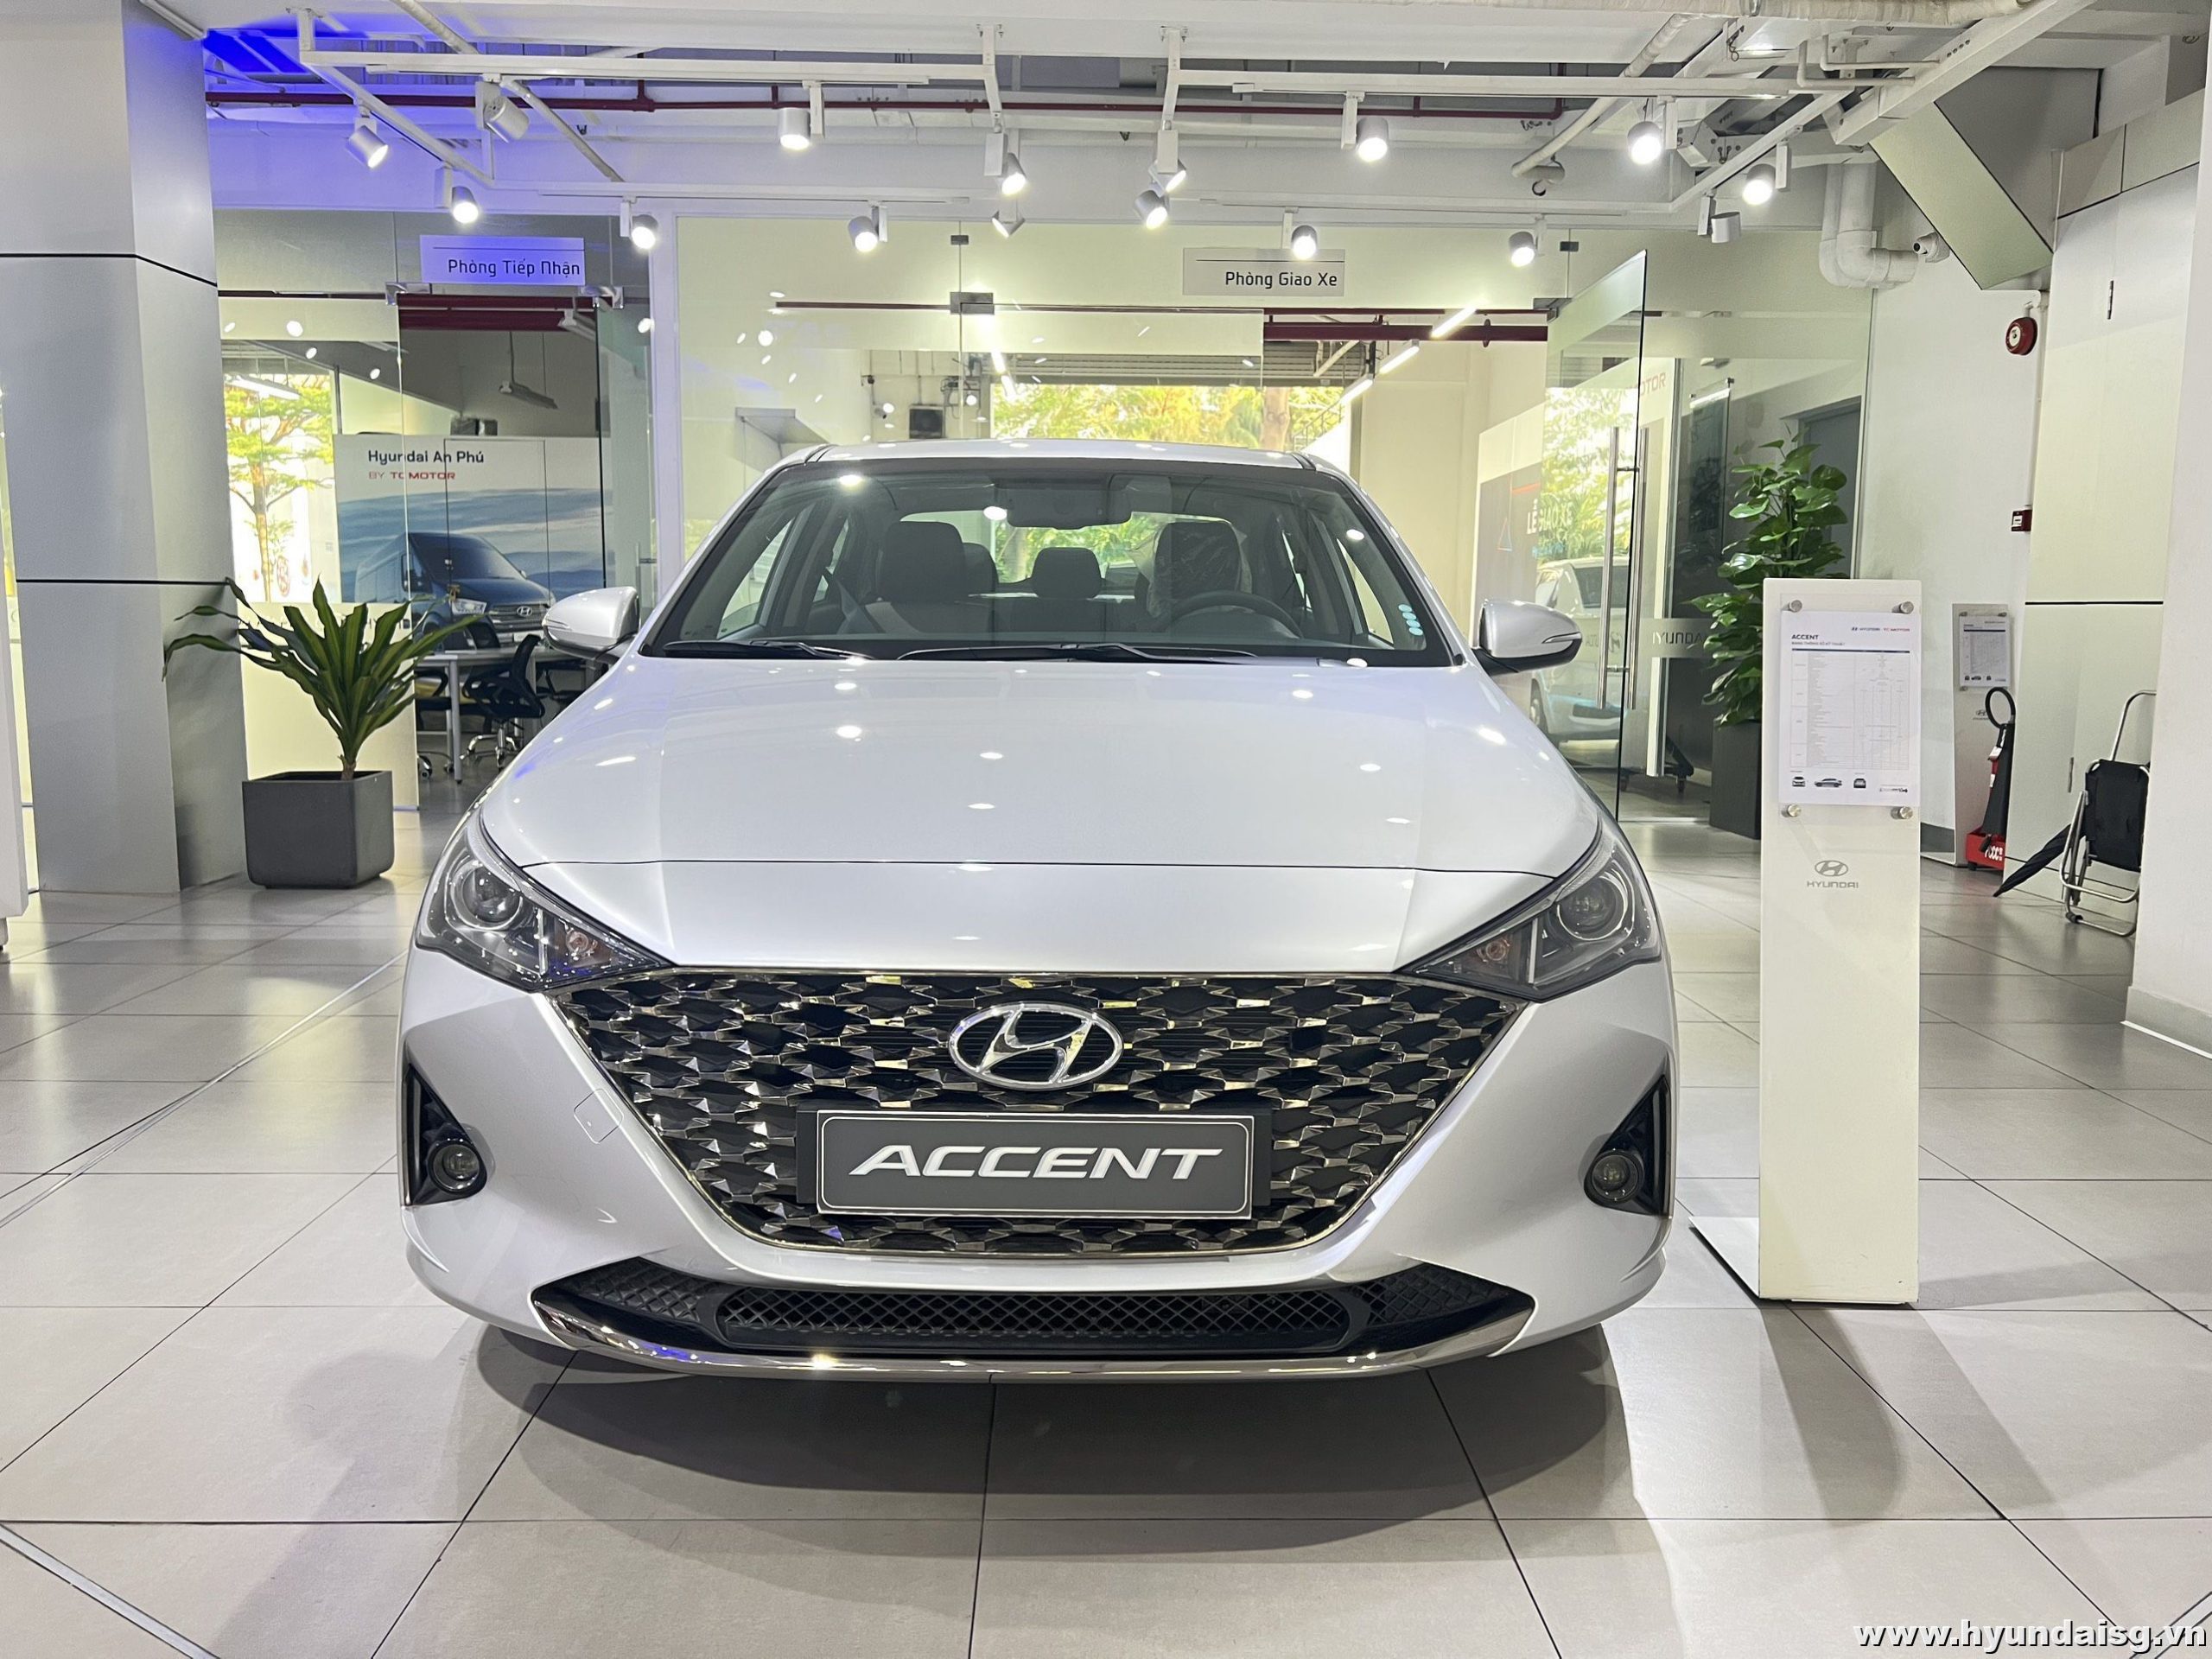 Hình Ảnh Tư vấn mua xe Hyundai Accent: Giá cả, thủ tục mua xe, bảo hành và dịch vụ sau bán hàng 1